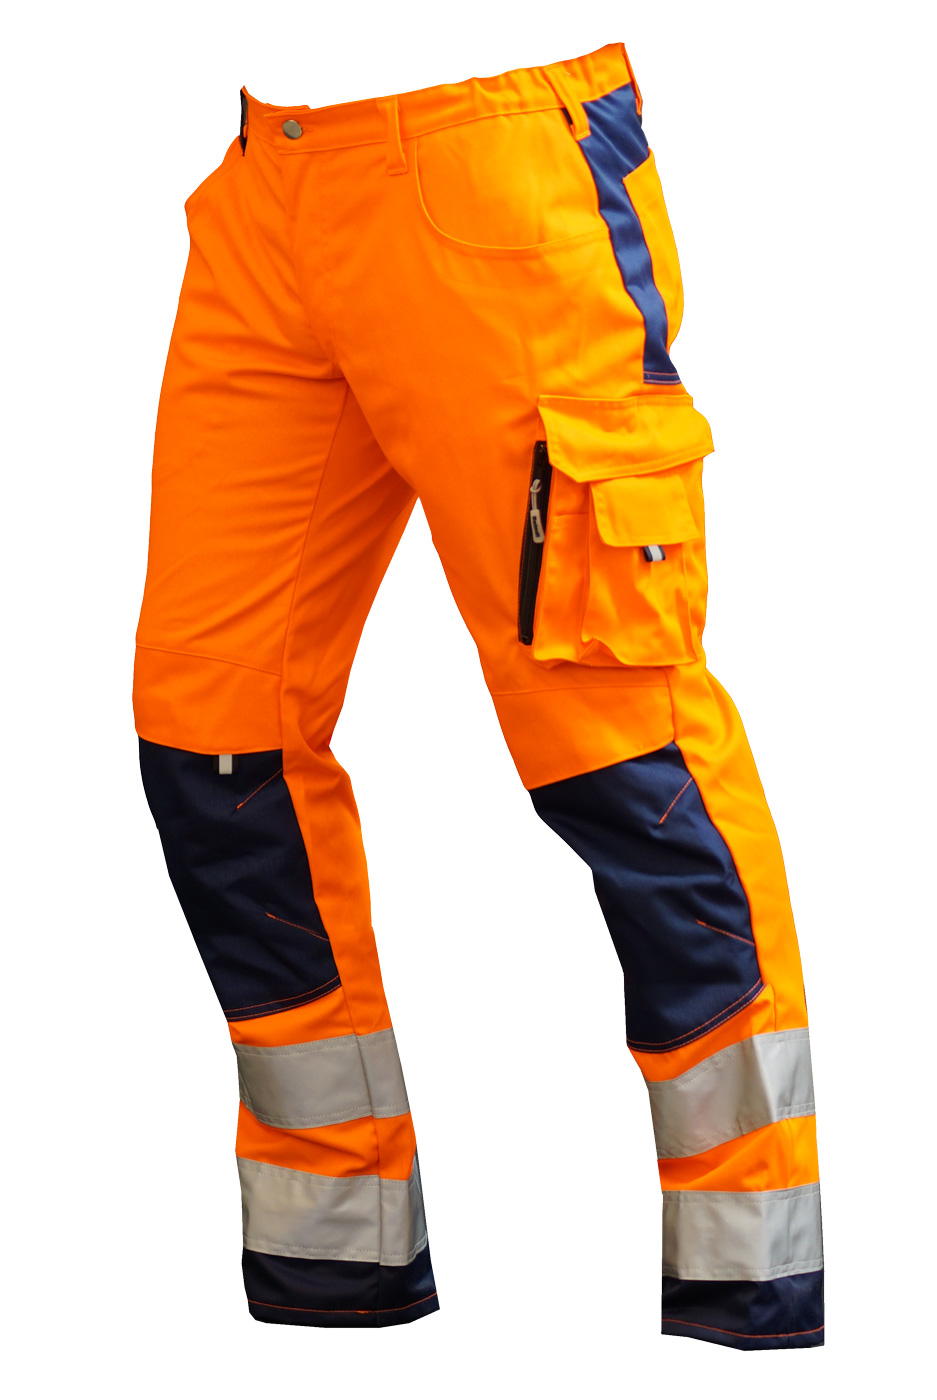 REINDL | Bundhose extrem Warnschut | Arbeitskleidung & Arbeitsschutzartikel  von Reindl